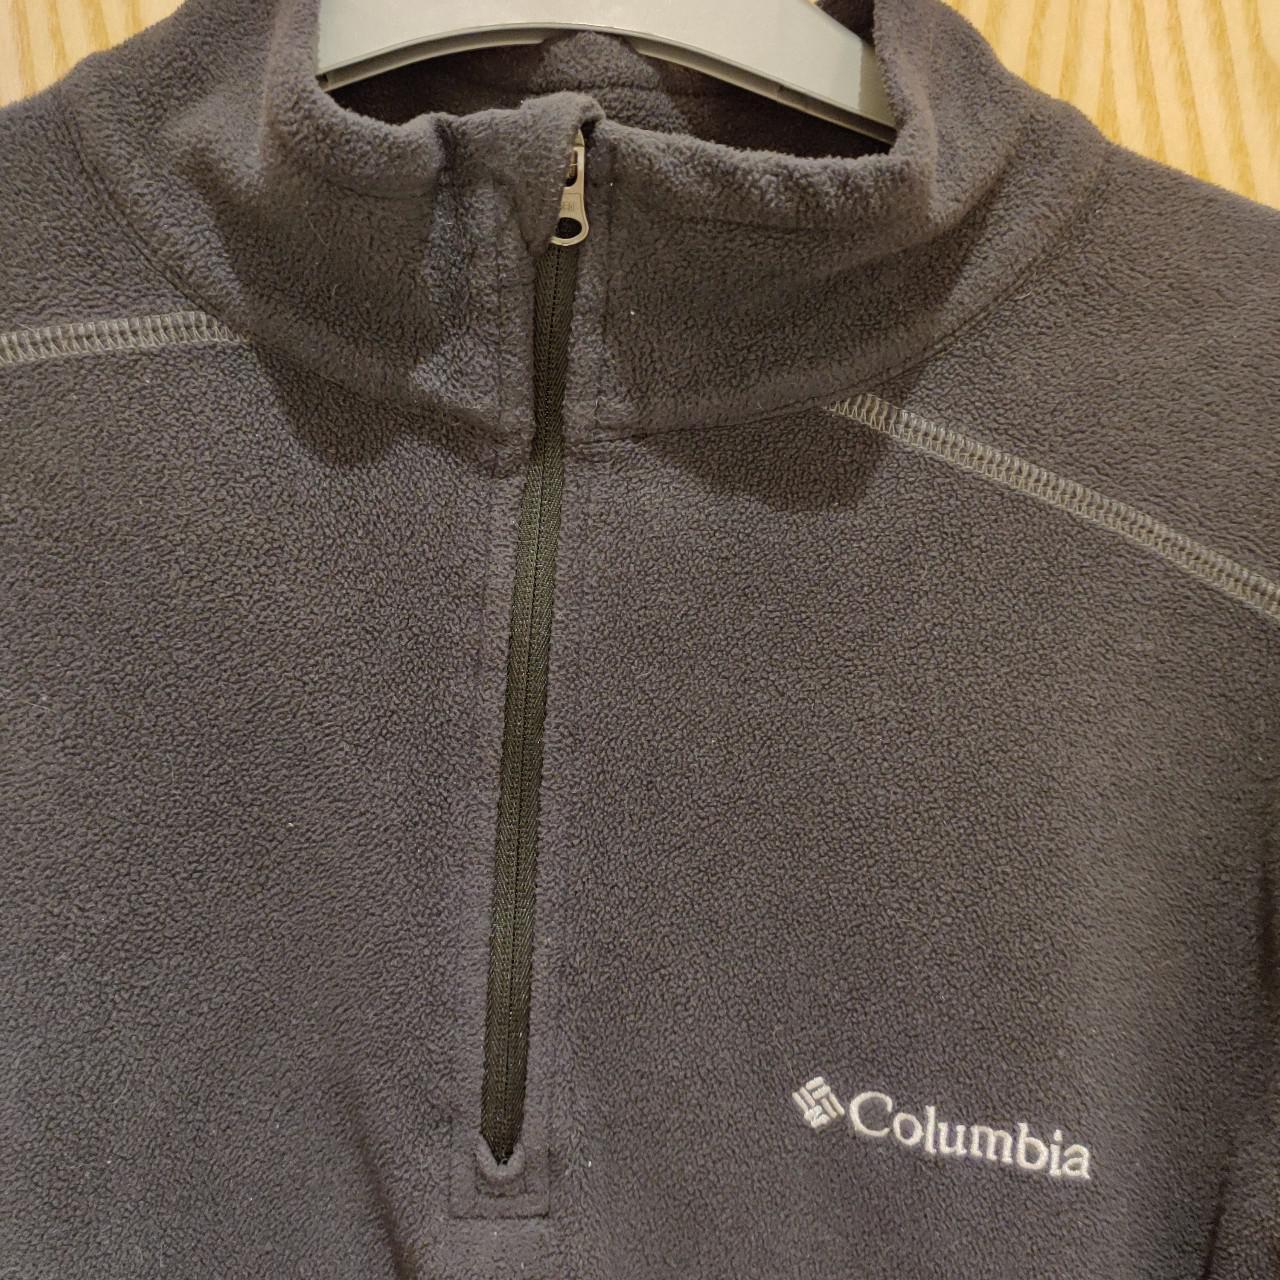 Columbia Quarter Zip Fleece Jacket Black/Grey Size... - Depop